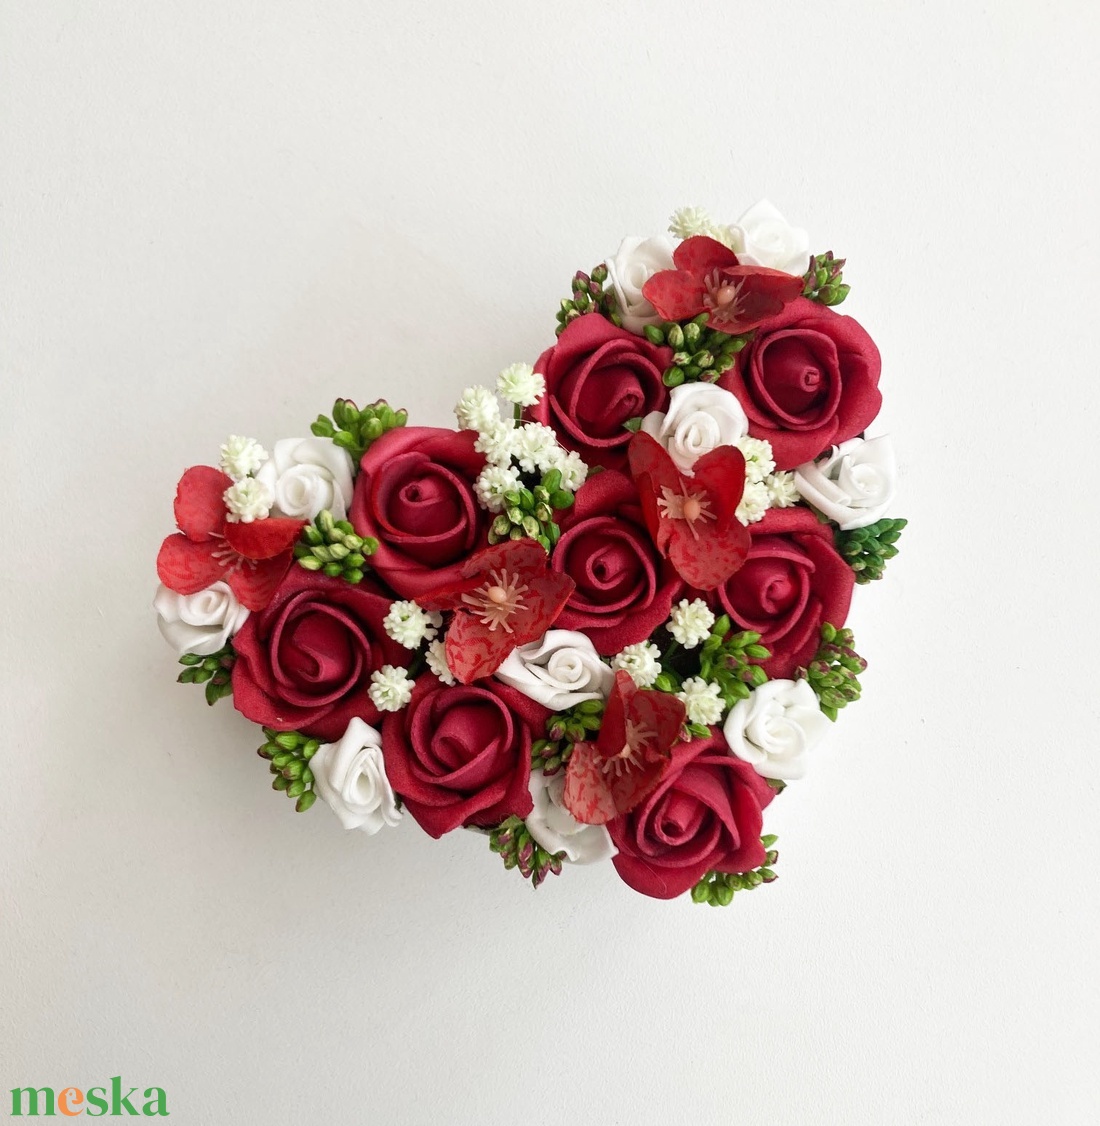 Szív virágdoboz piros rózsás - otthon & lakás - dekoráció - virágdísz és tartó - virágbox, virágdoboz - Meska.hu